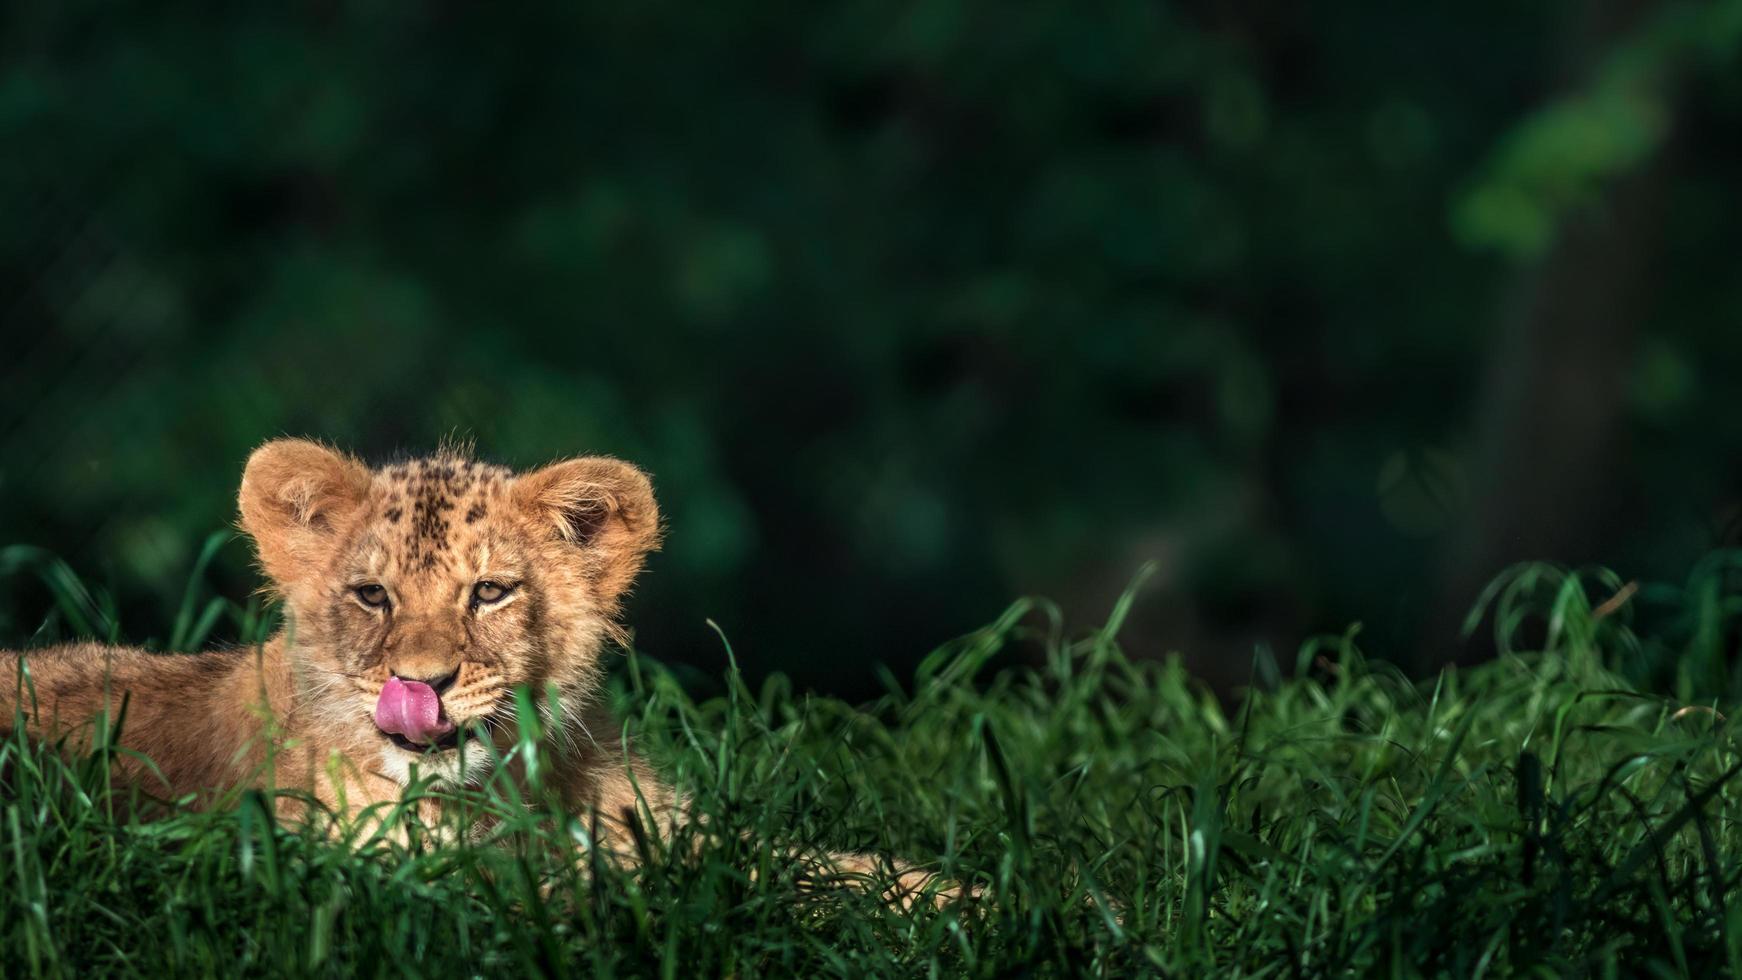 león africano del sur foto